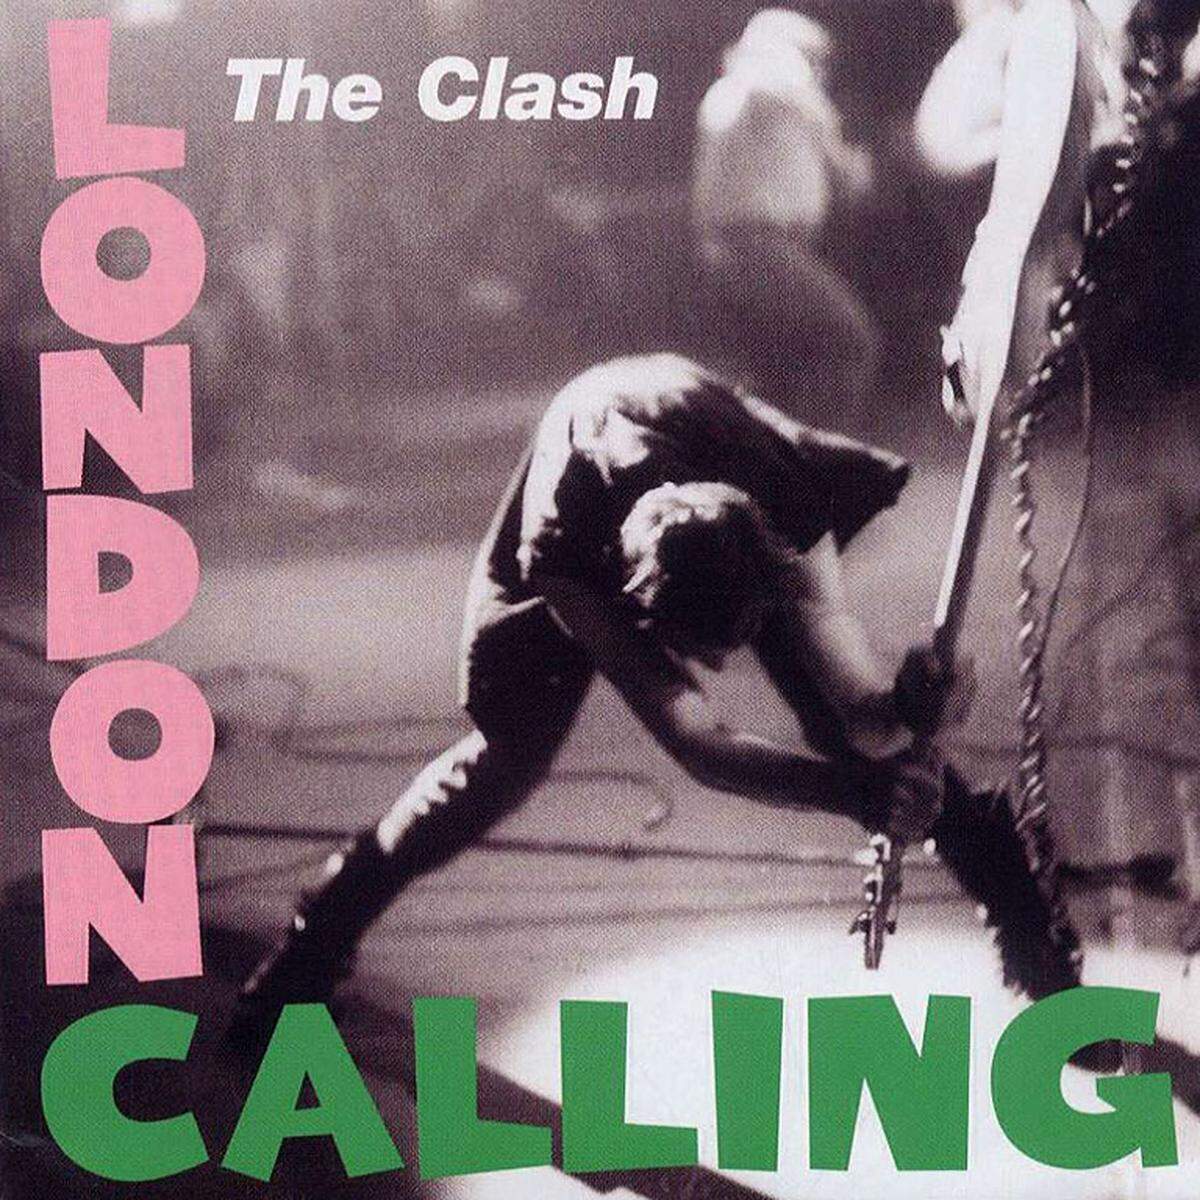 Apropos Artwork: Das Cover der Clash-Platte "London Calling" ist dem ersten Album von Elvis Presley nachempfunden. Pflicht-Album.